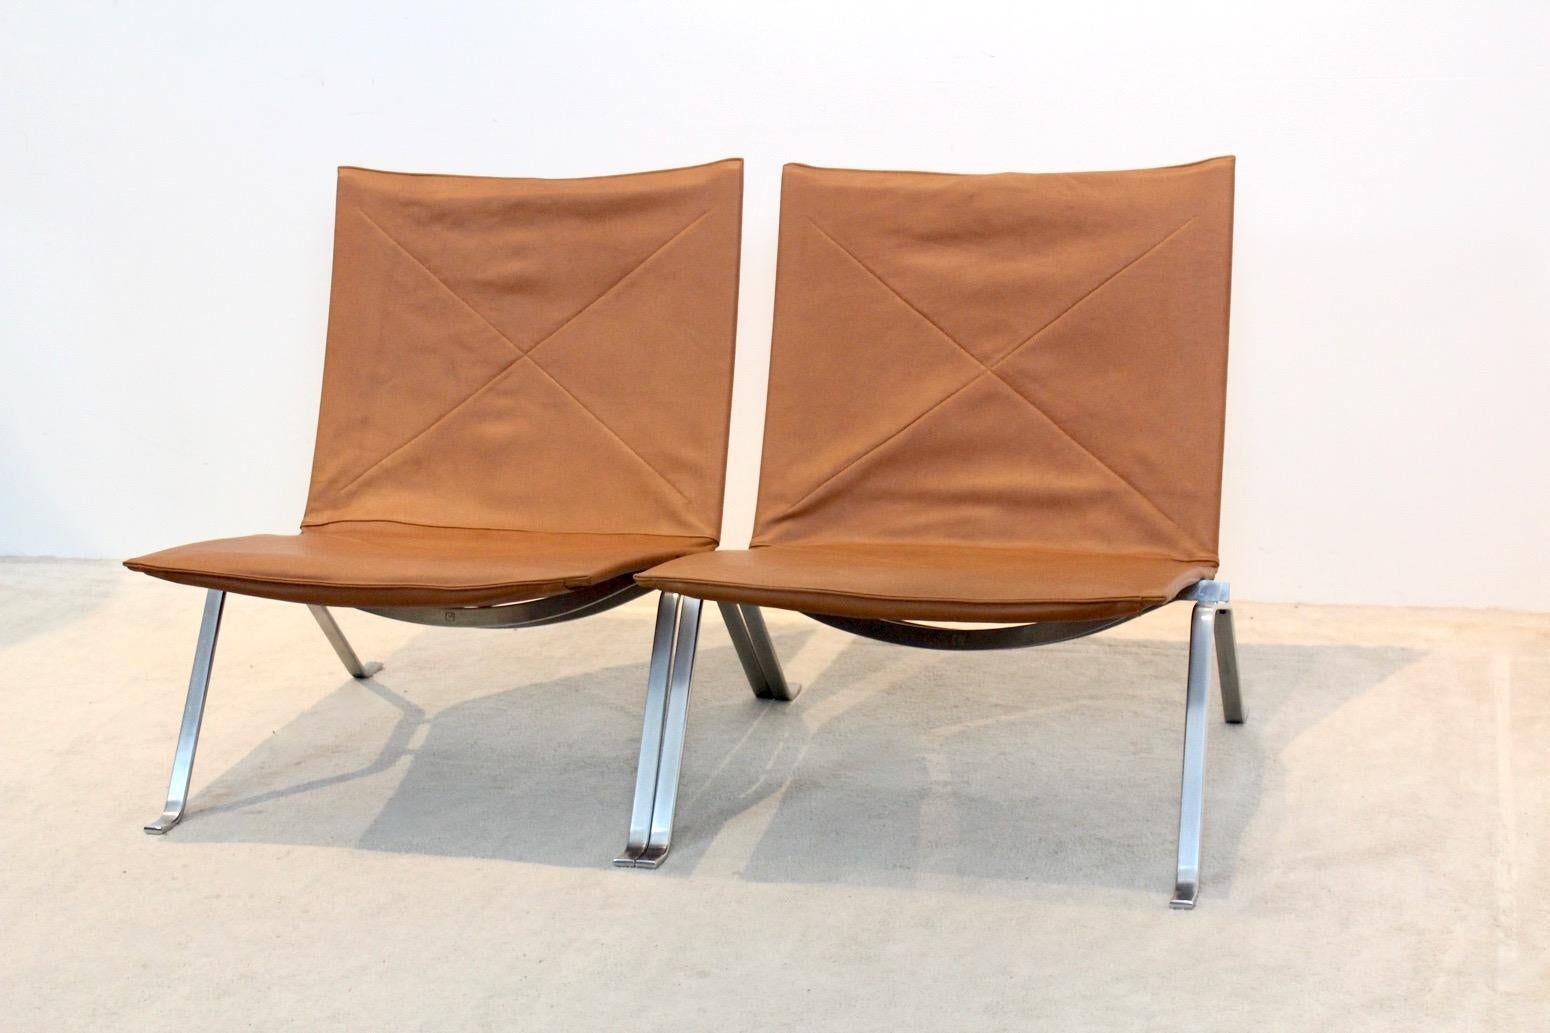 Un très bel ensemble de chaises originales PK 22 conçues par Poul Kjærholm pour E. Kold Christensen, Danemark. Cette ancienne édition originale des années 1950 a été retapissée de manière professionnelle avec du cuir cognac souple. Le cadre solide